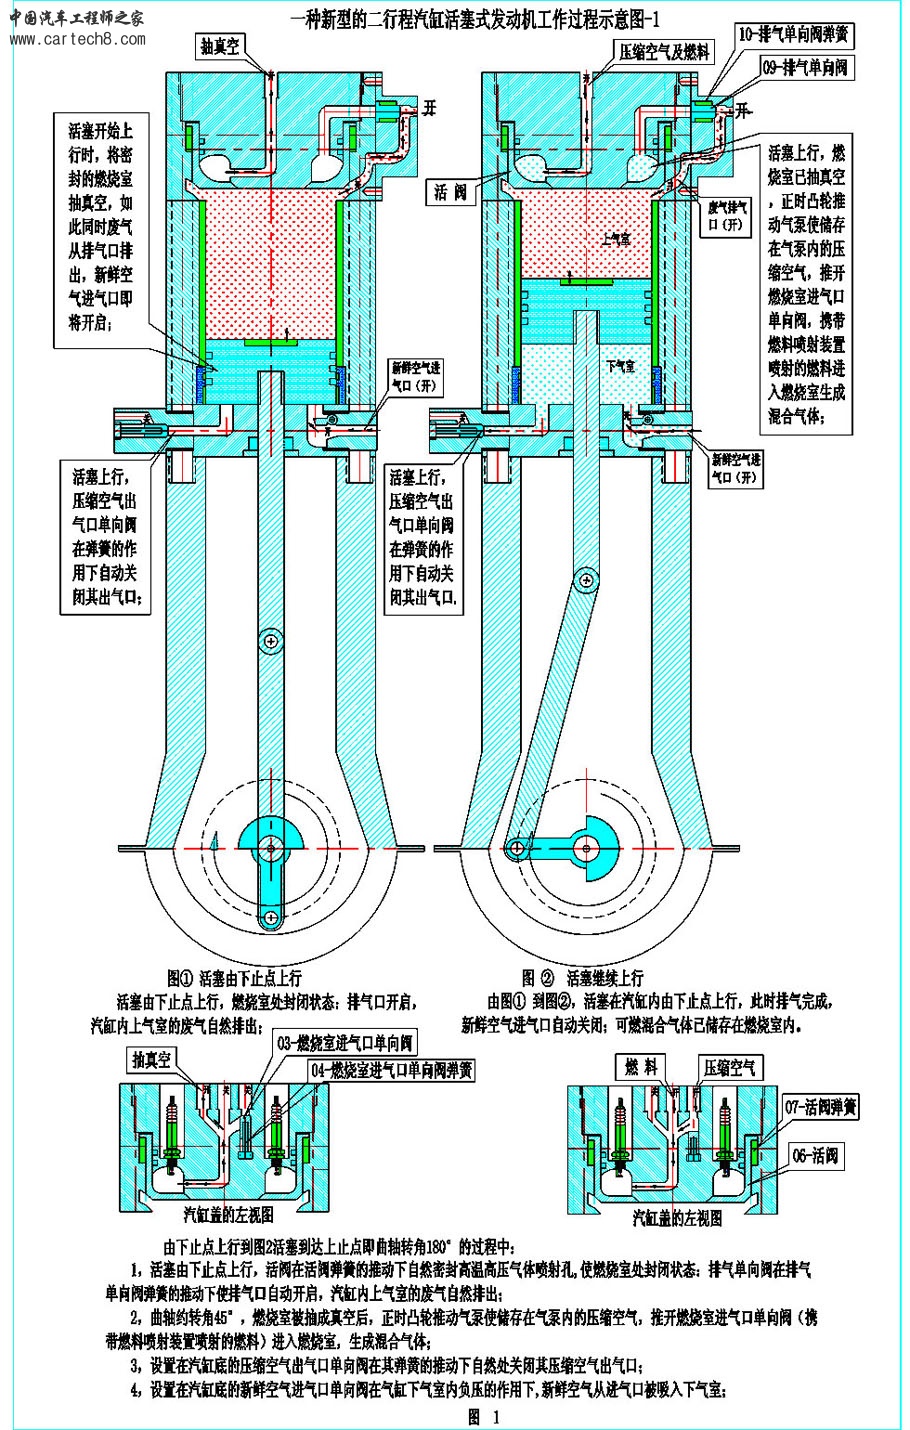 一种新型的二行程汽缸活塞式发动机工作过程示意图-1